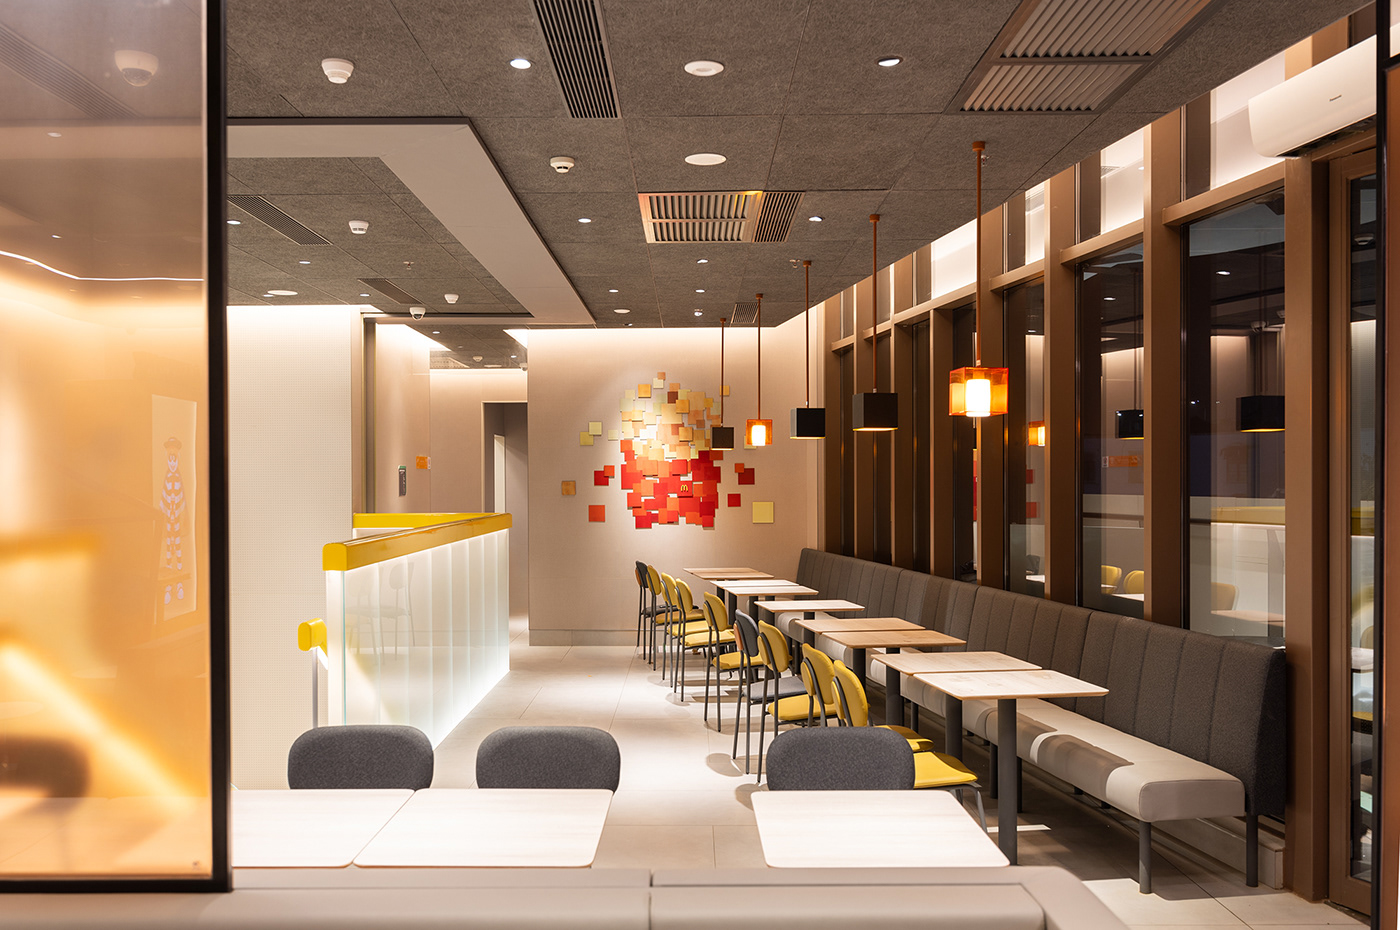 mcdonald's Food  restaurant design interior design  브랜딩